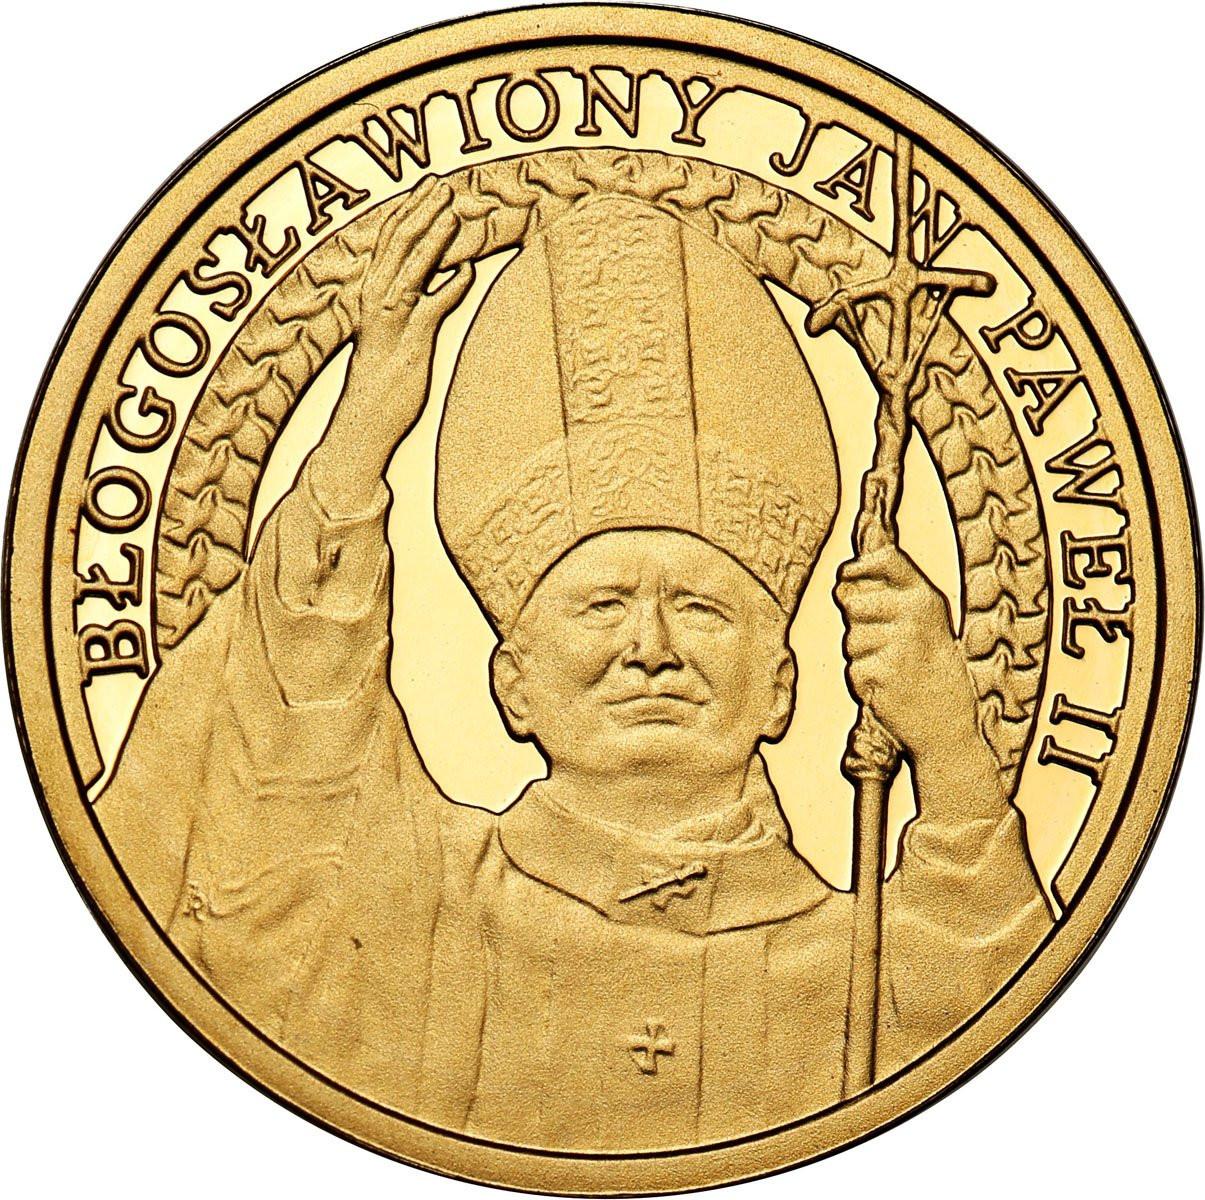 Polska medal Jan Paweł II 2011 r st. L